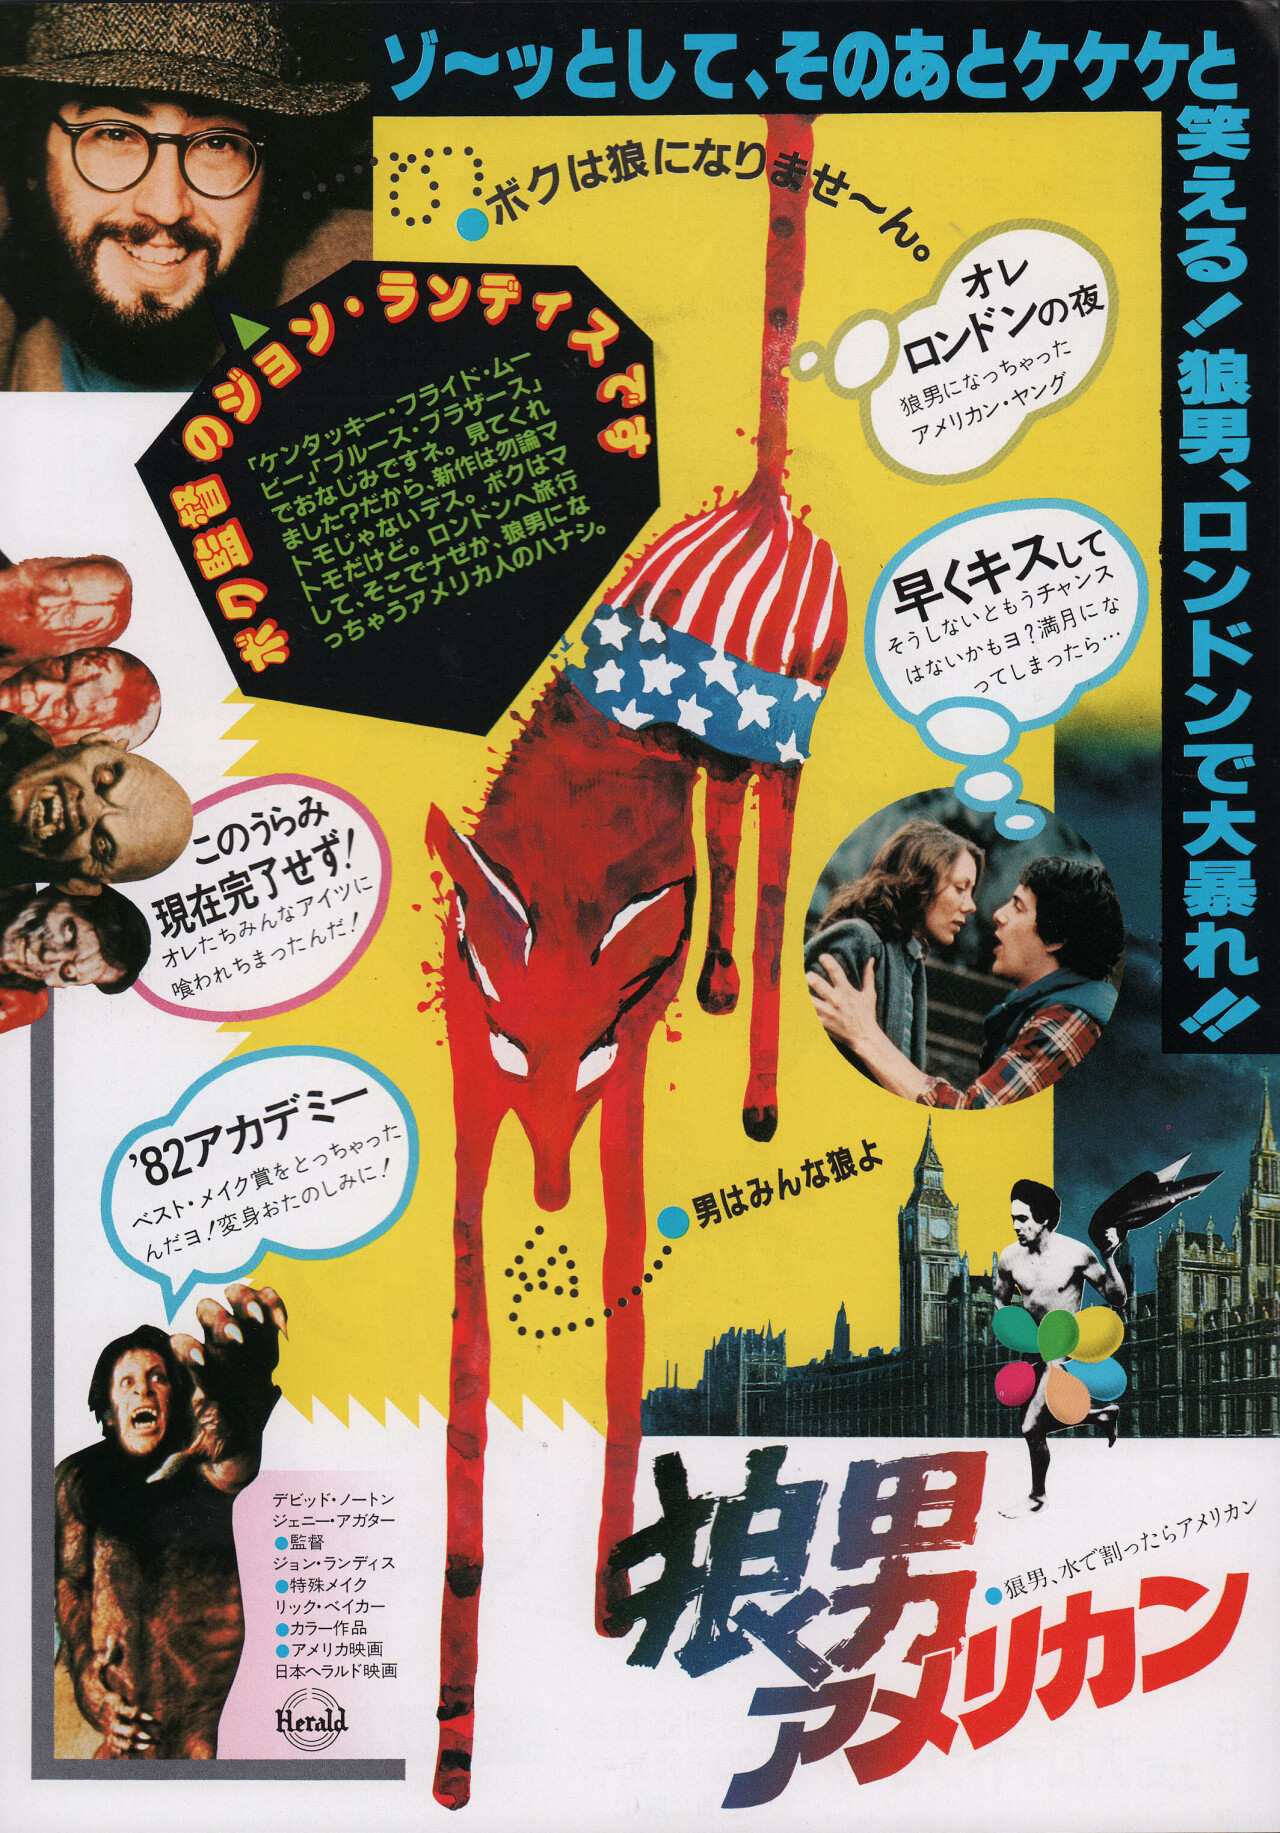 Американский оборотень в Лондоне (An American Werewolf in London, 1981), режиссёр Джон Лэндис, японский постер к фильму (ужасы, 1981 год)